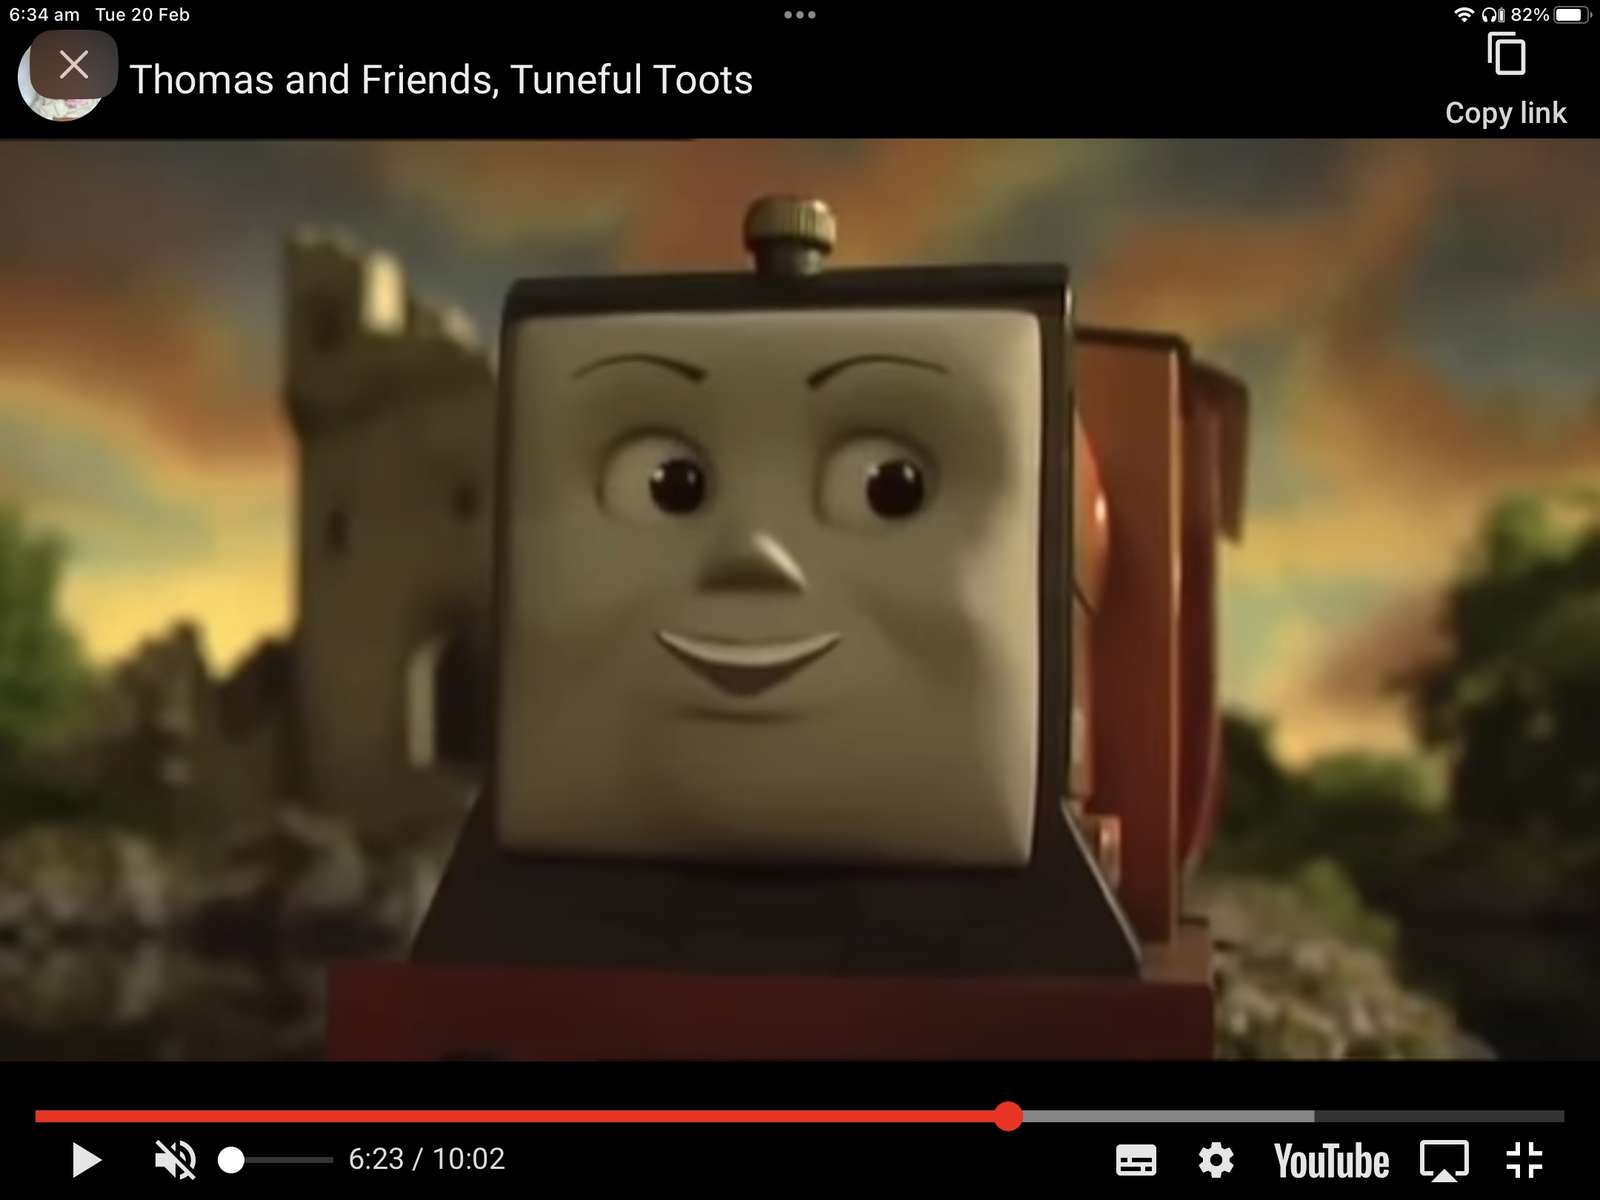 Thomas i przyjaciele, melodyjne toots puzzle online ze zdjęcia